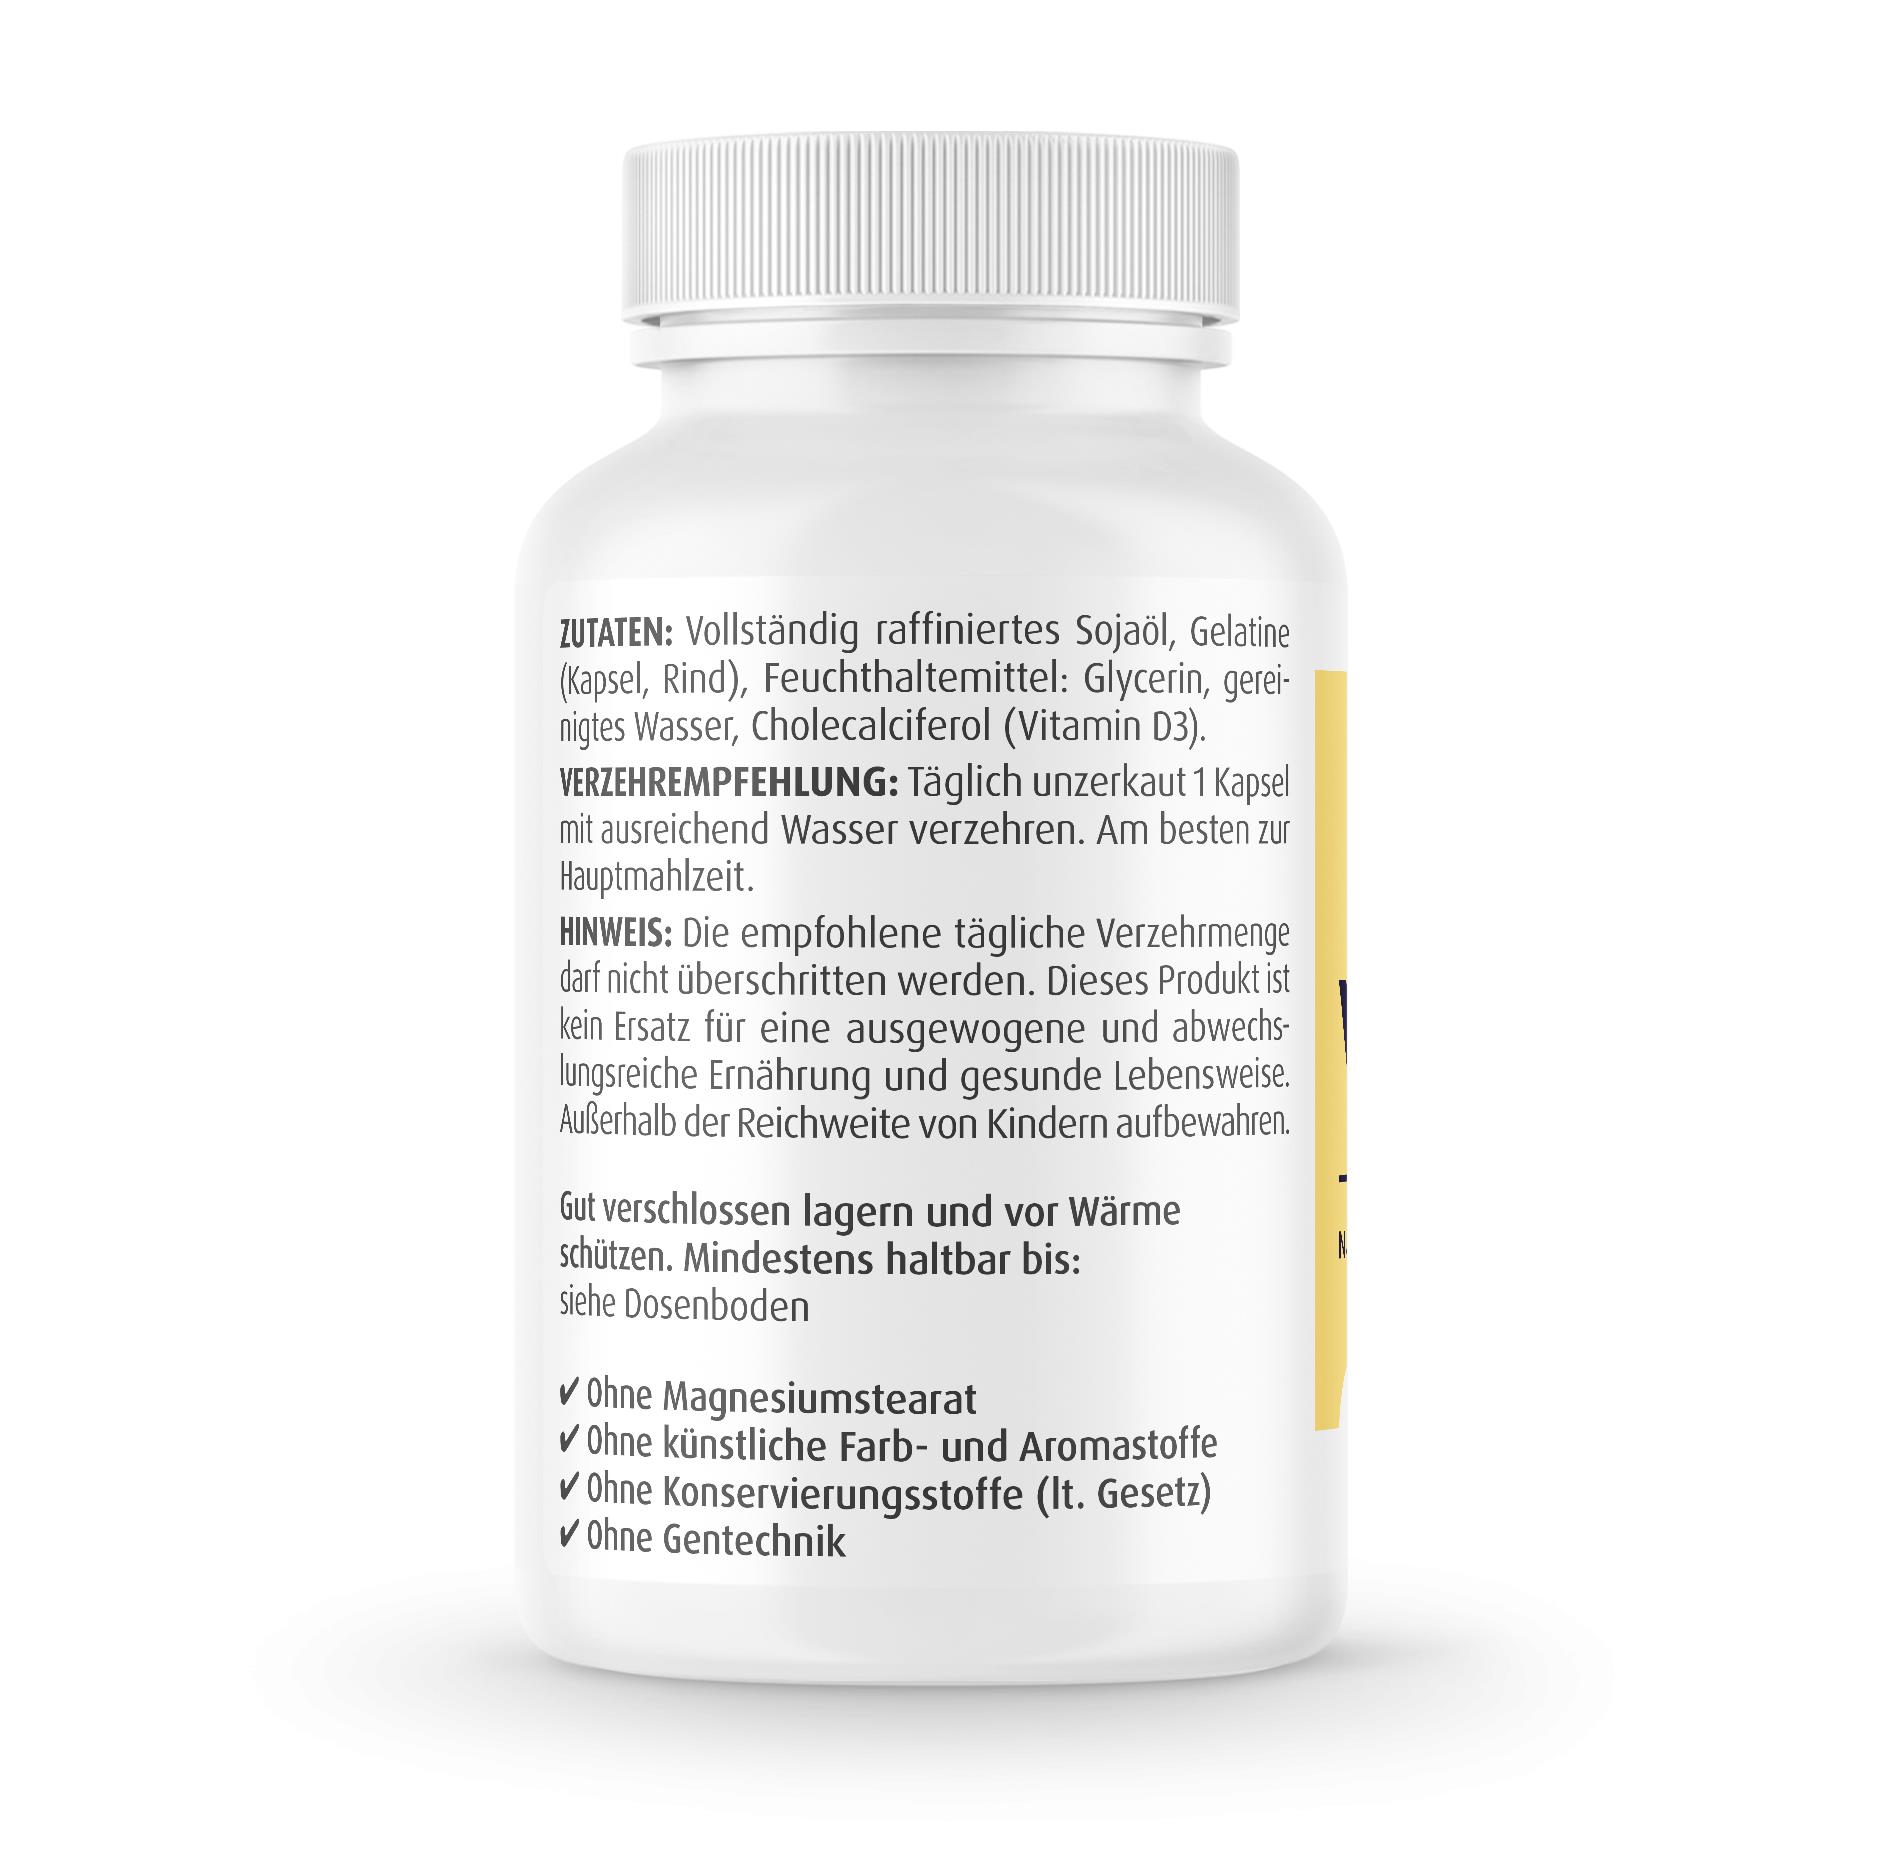 Vitamin D3 1.000 I.E. - 200 Kapseln